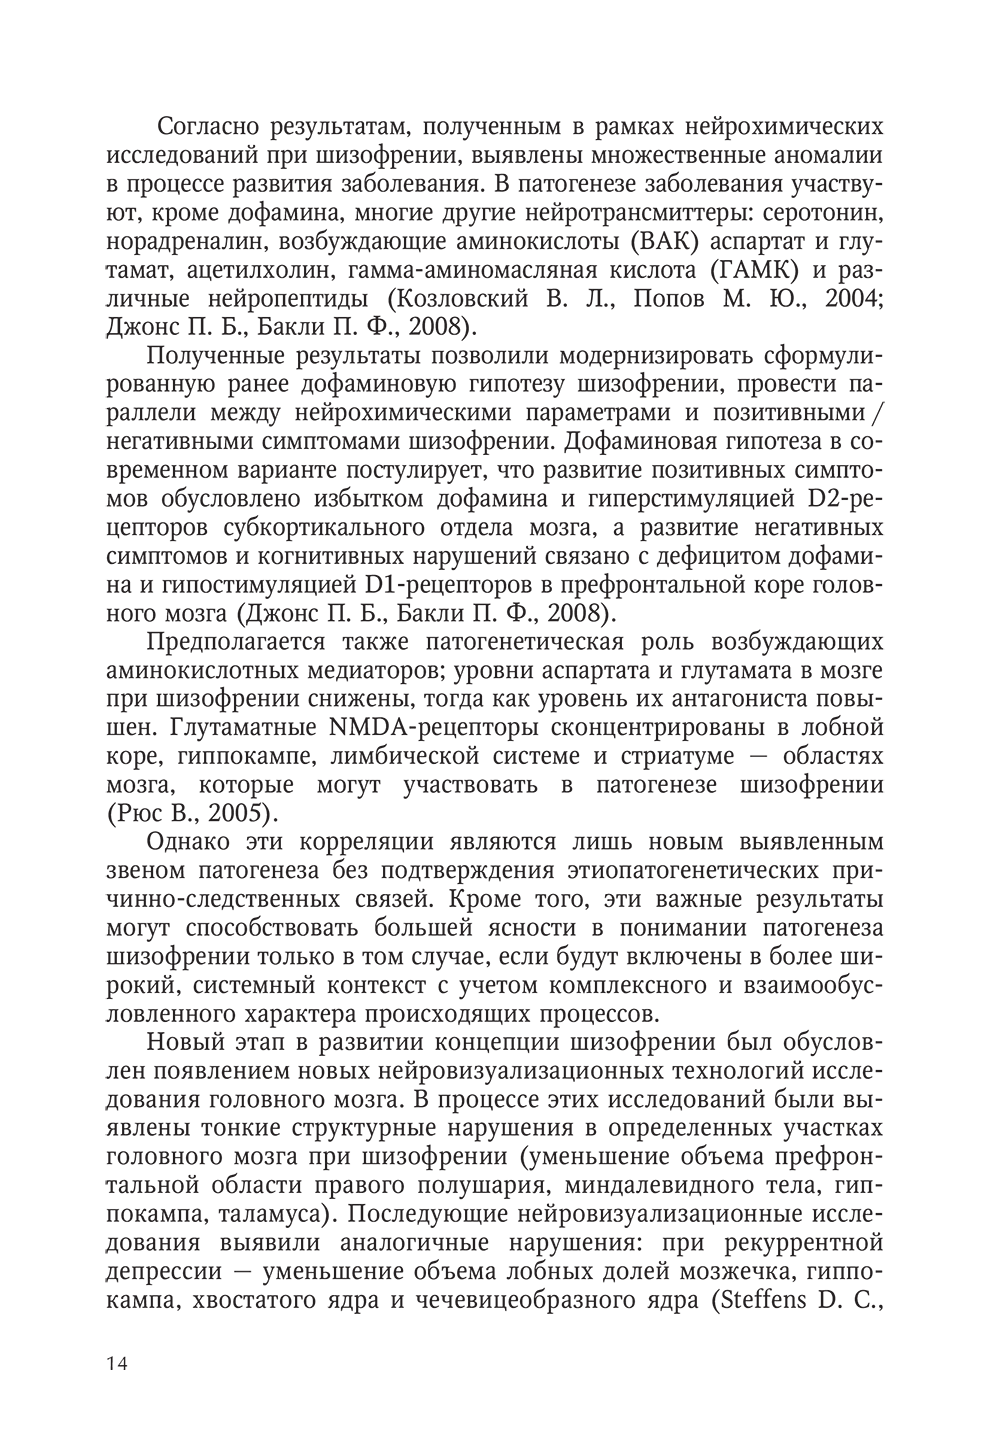 Пример страницы из книги "Интегративная модель психотерапии эндогенных психических расстройств" - Гусева О. В., Коцюбинский А. П.